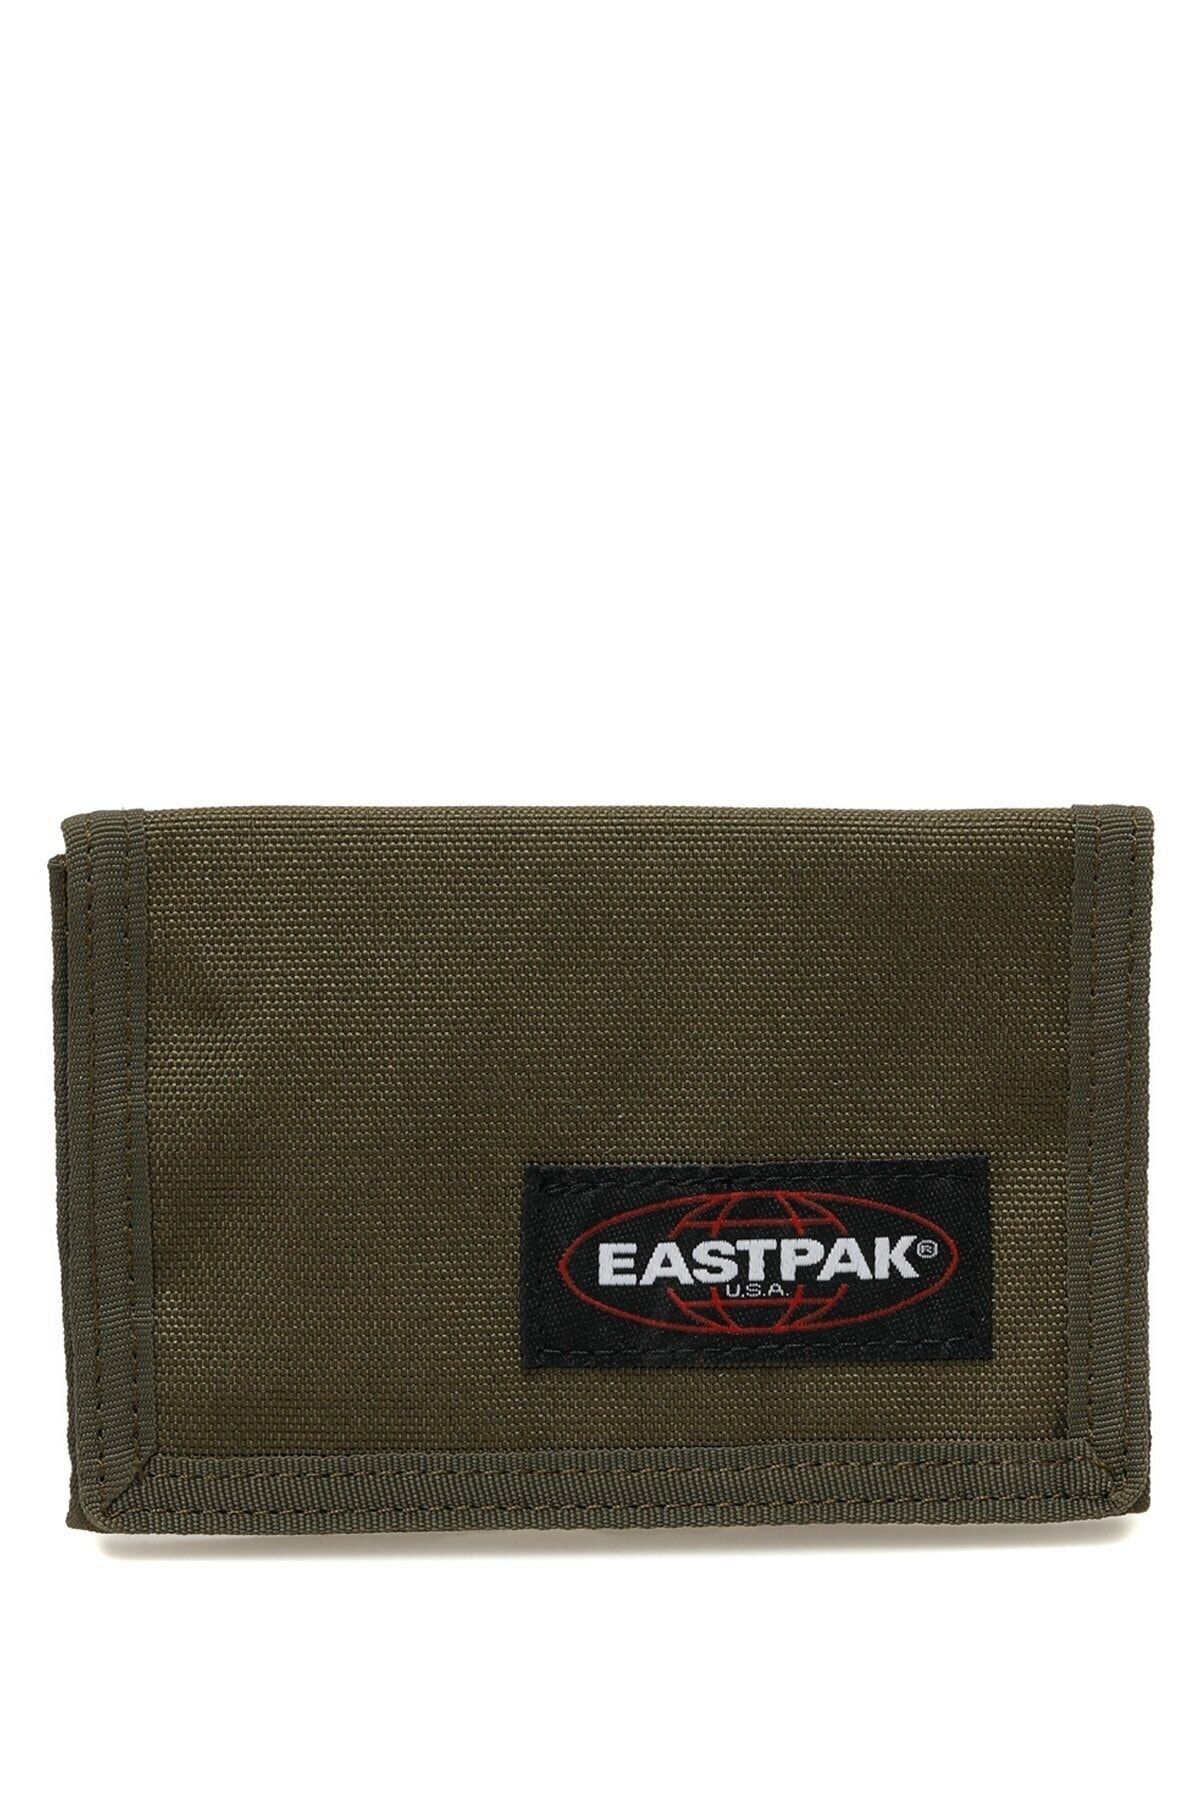 Eastpak Crew Sıngle Yeşil Unisex Cüzdan